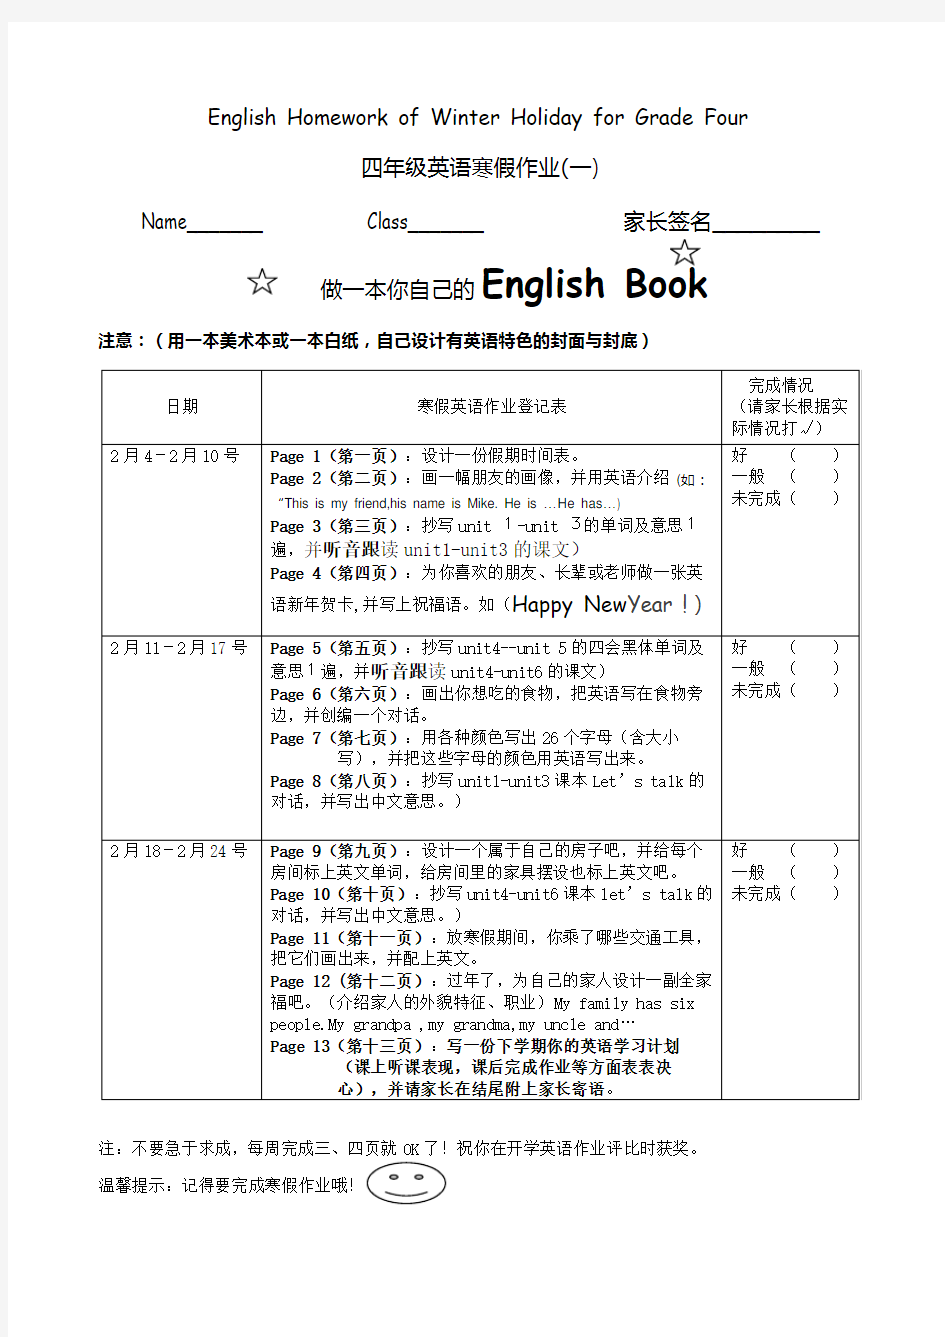 小学四年级英语上寒假作业布置.doc77